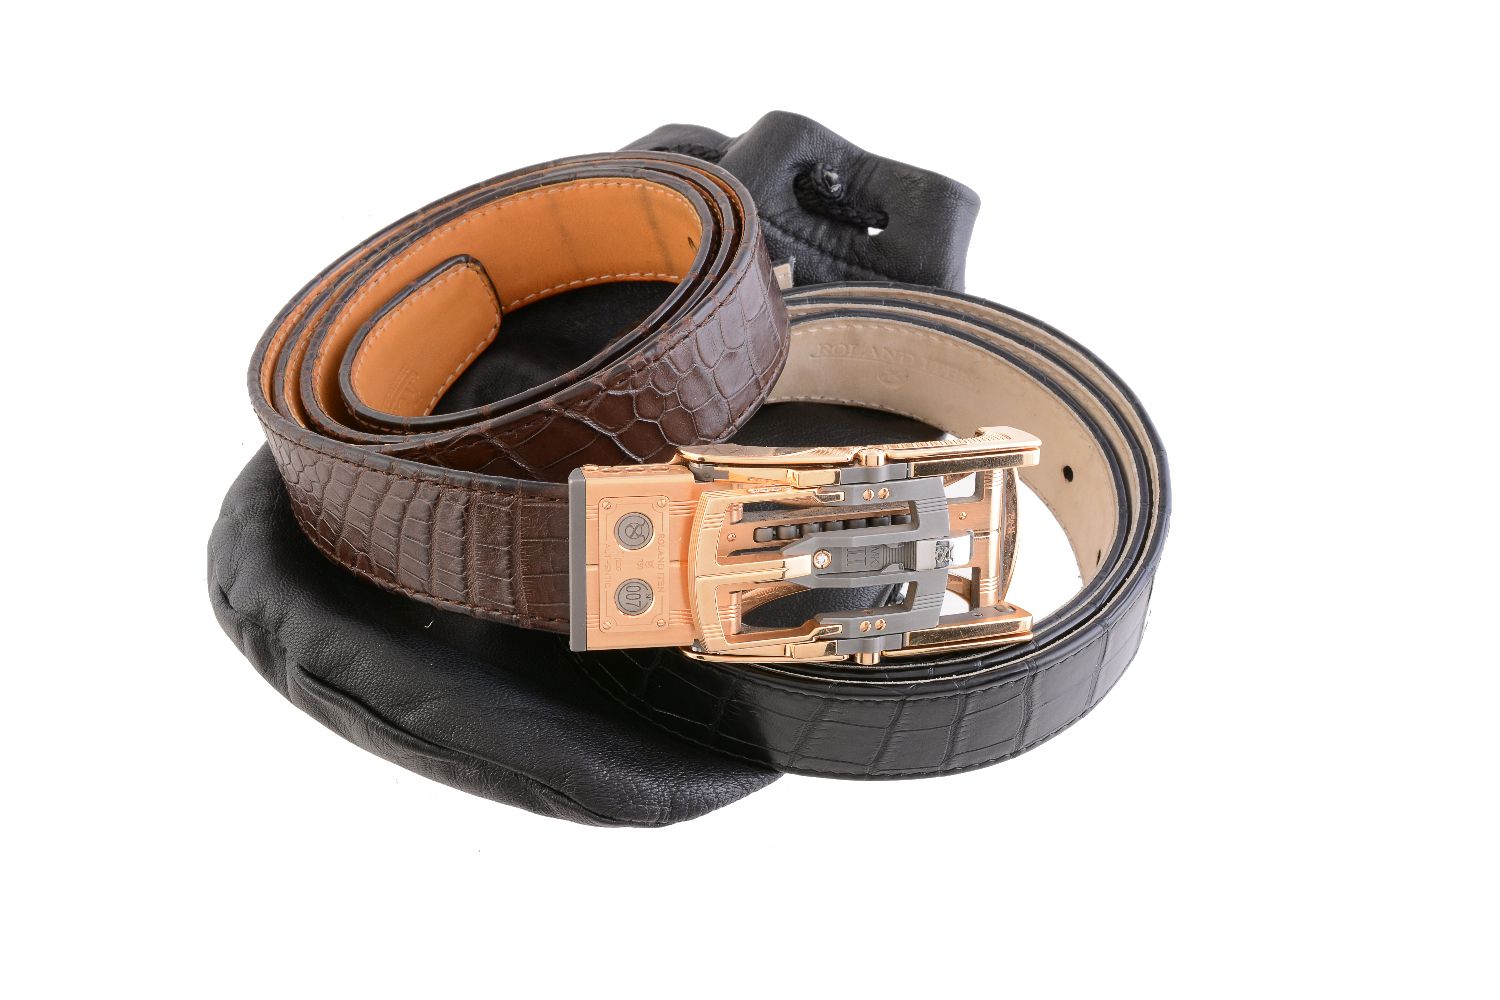 ϒ Roland Iten, Calibre R8 Mk II, a gold coloured, steel, titanium and diamond belt buckle - Image 6 of 6